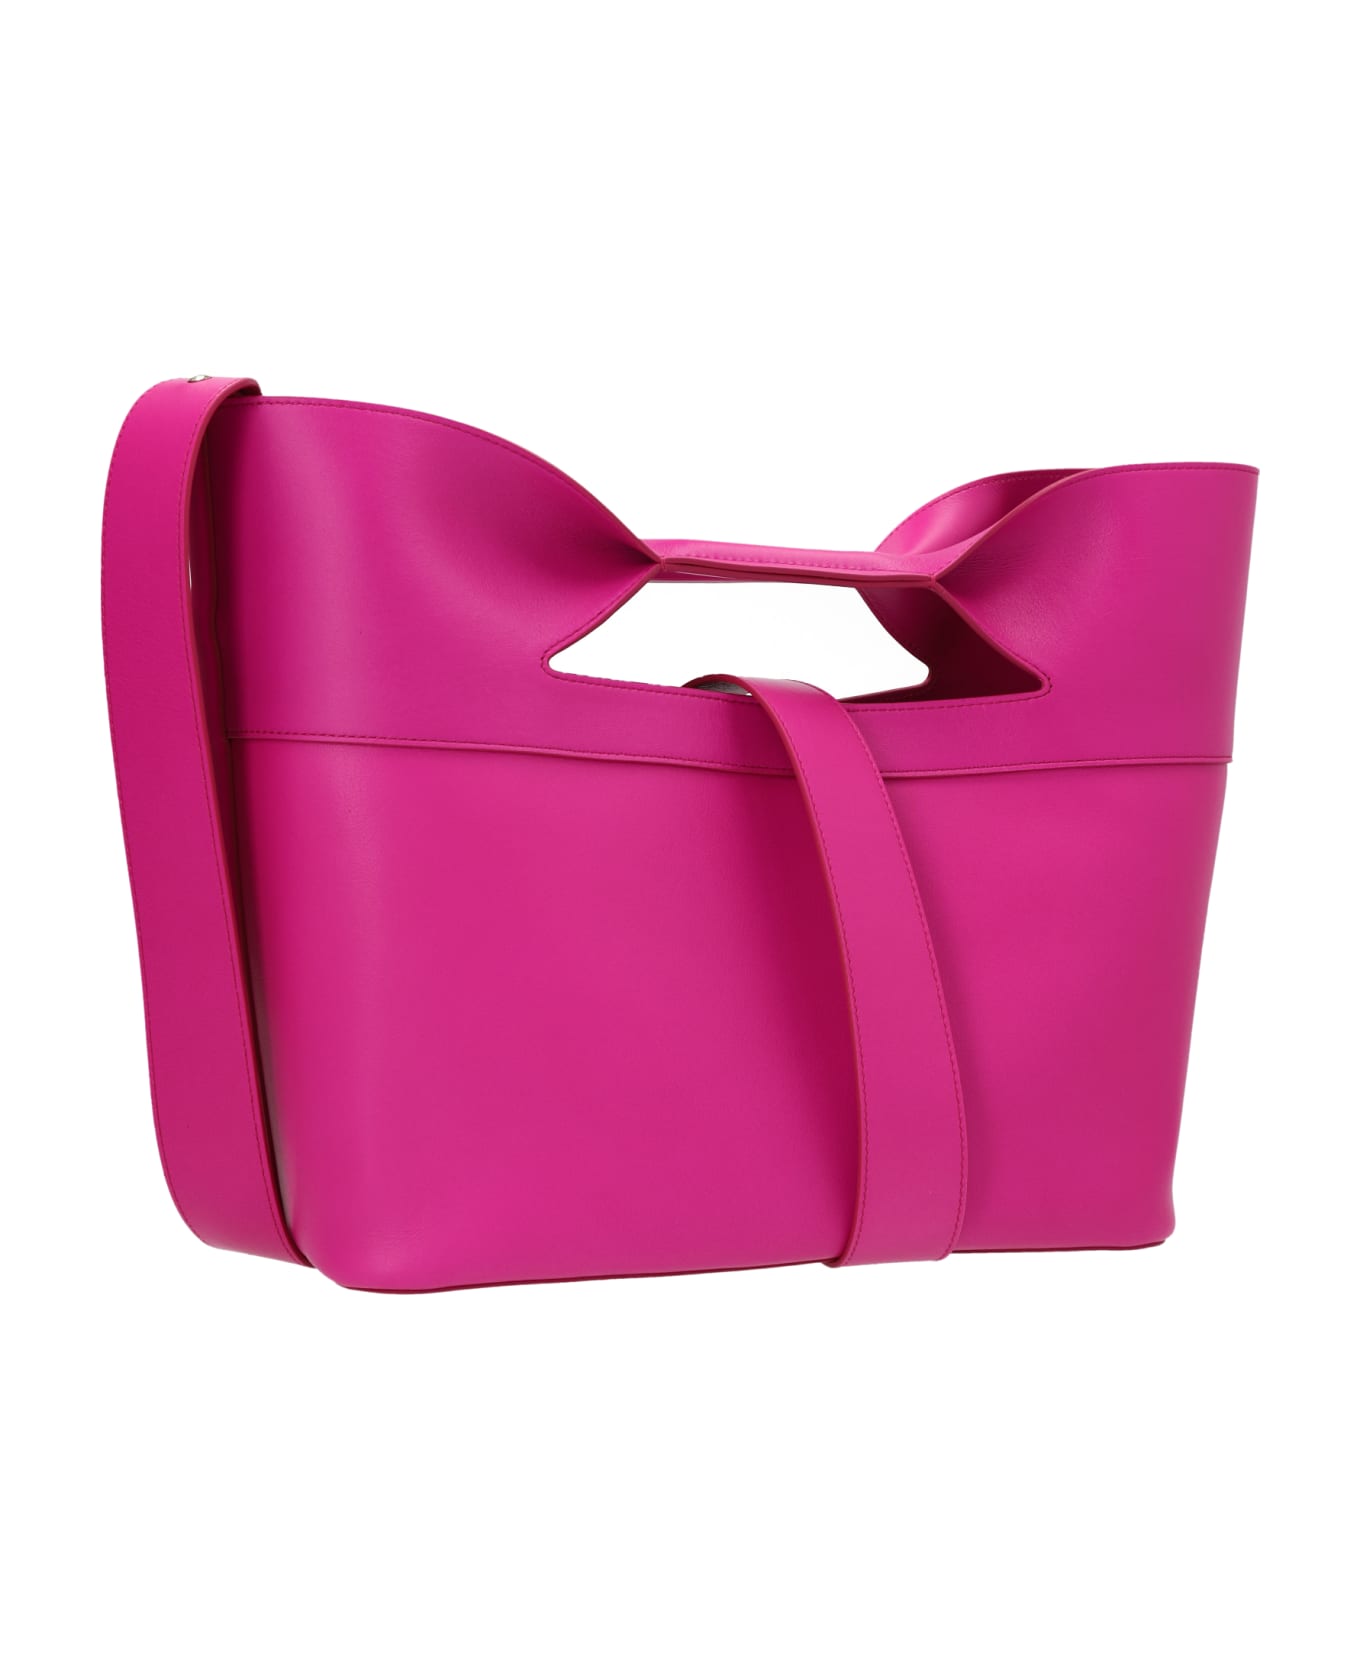 Alexander McQueen 'the Bow' Small Handbag - Pink トートバッグ